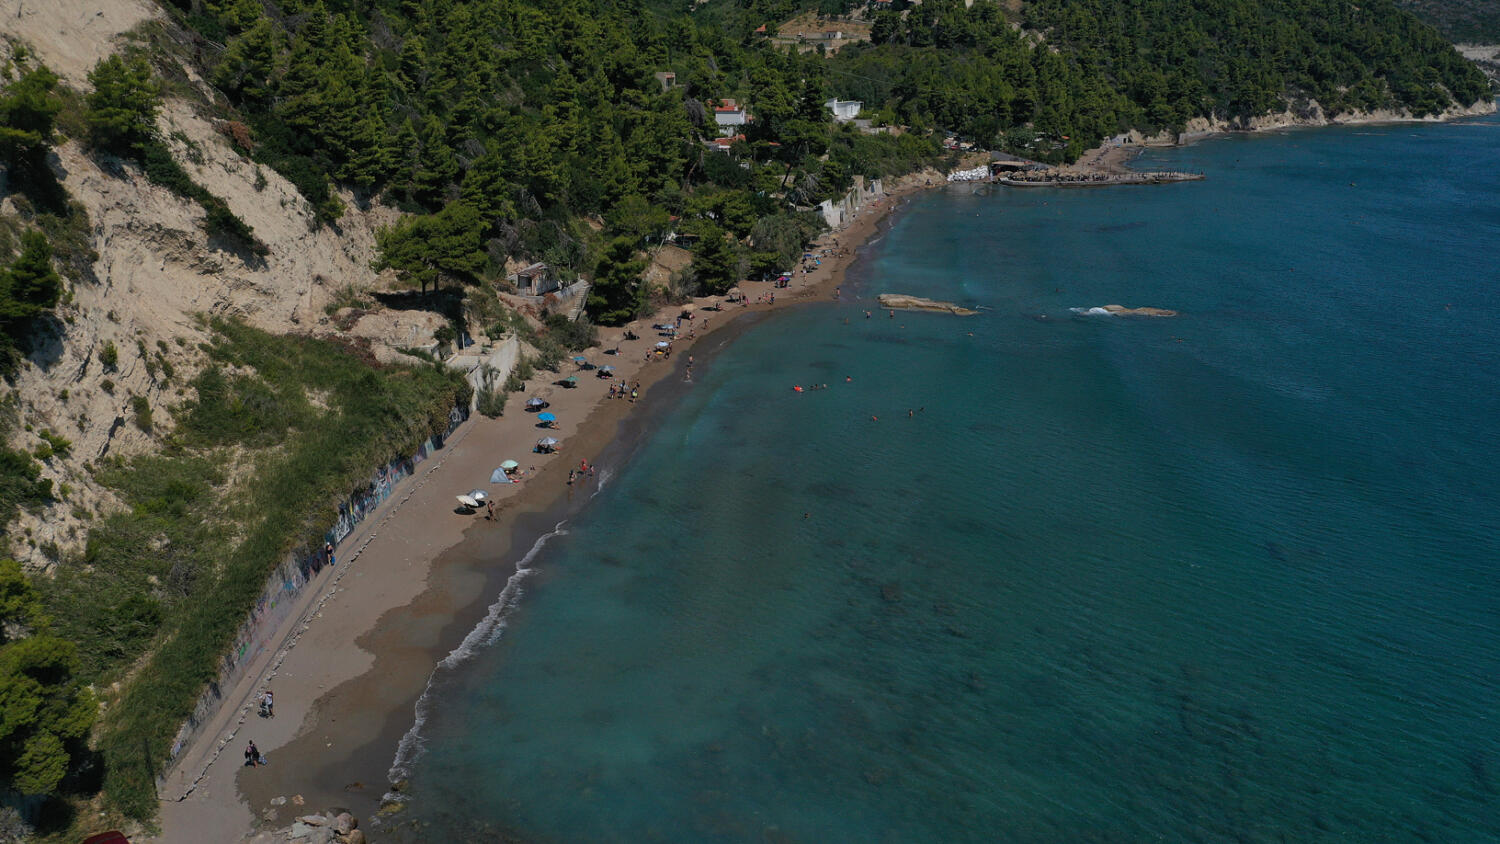 Παραλία Σουτσίνι, Κύμη. Φωτογραφία: ©Βασίλης Συκάς, για τον Δήμο Κύμης-Αλιβερίου